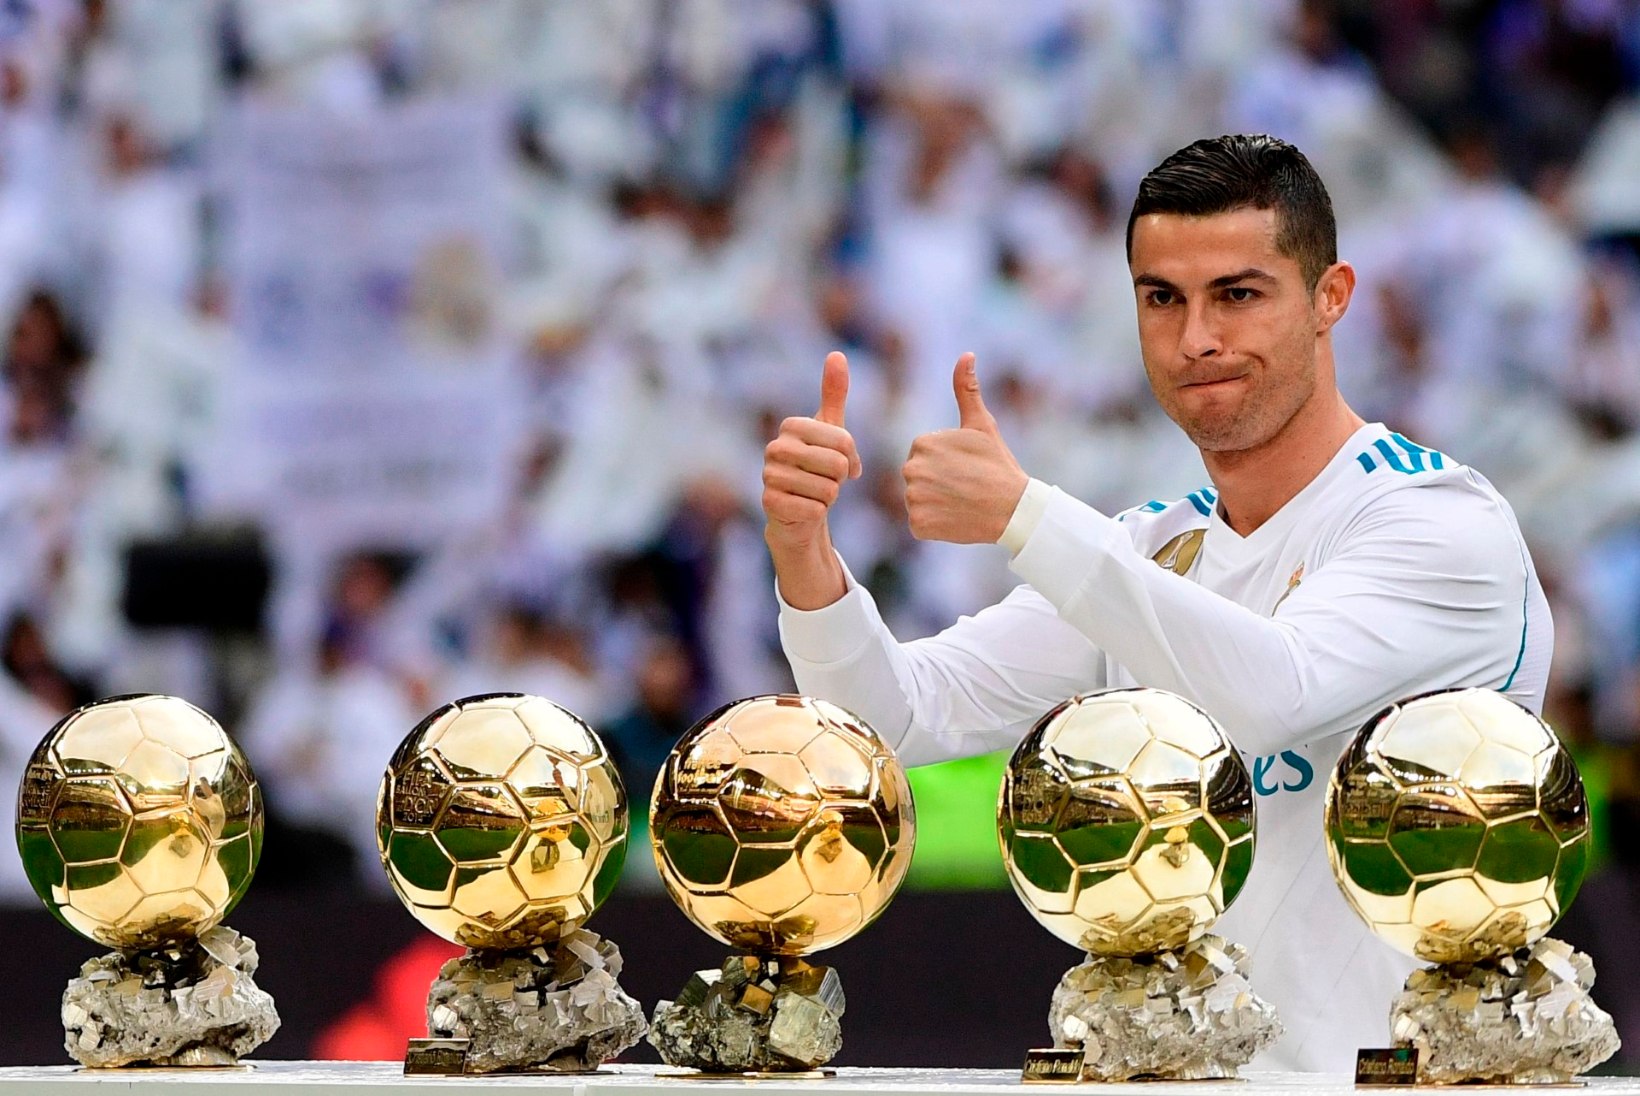 TEHAKSE LIIGA? Cristiano Ronaldo on maailma kalleimate pallurite nimekirjas alles 24. kohal